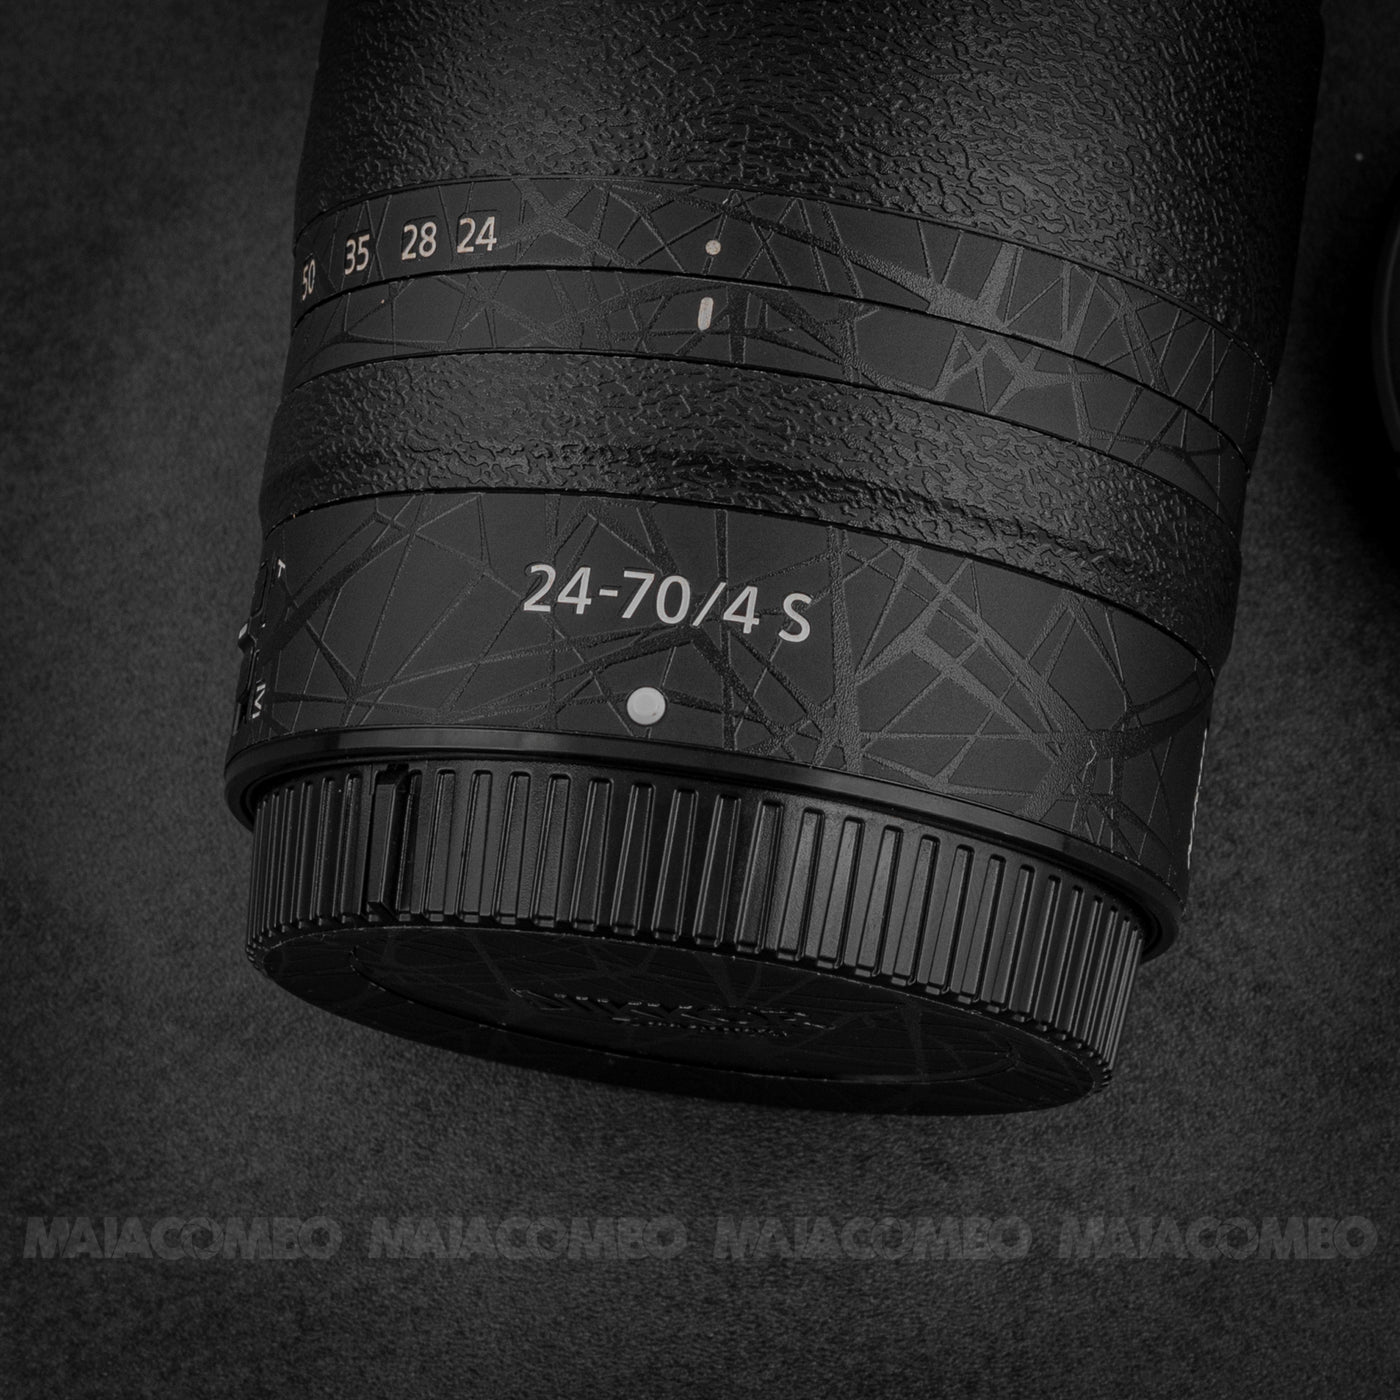 Nikon Z 24-70mm F4 S Lens Skin